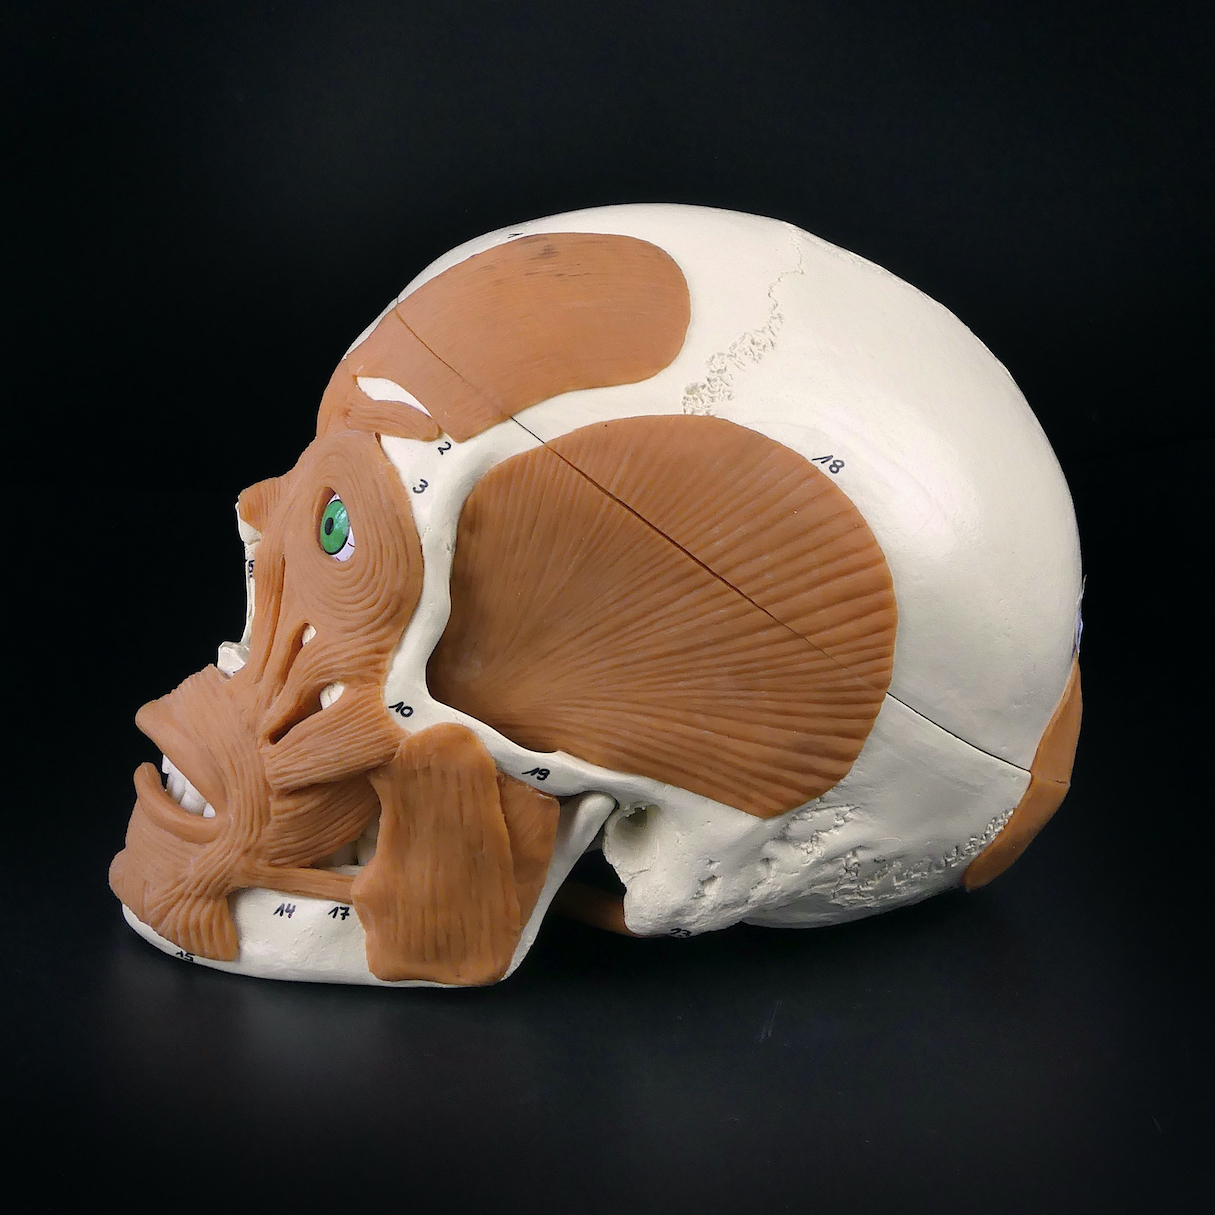 Crâne humain didactique numéroté - Modèle allemand - OVIRY